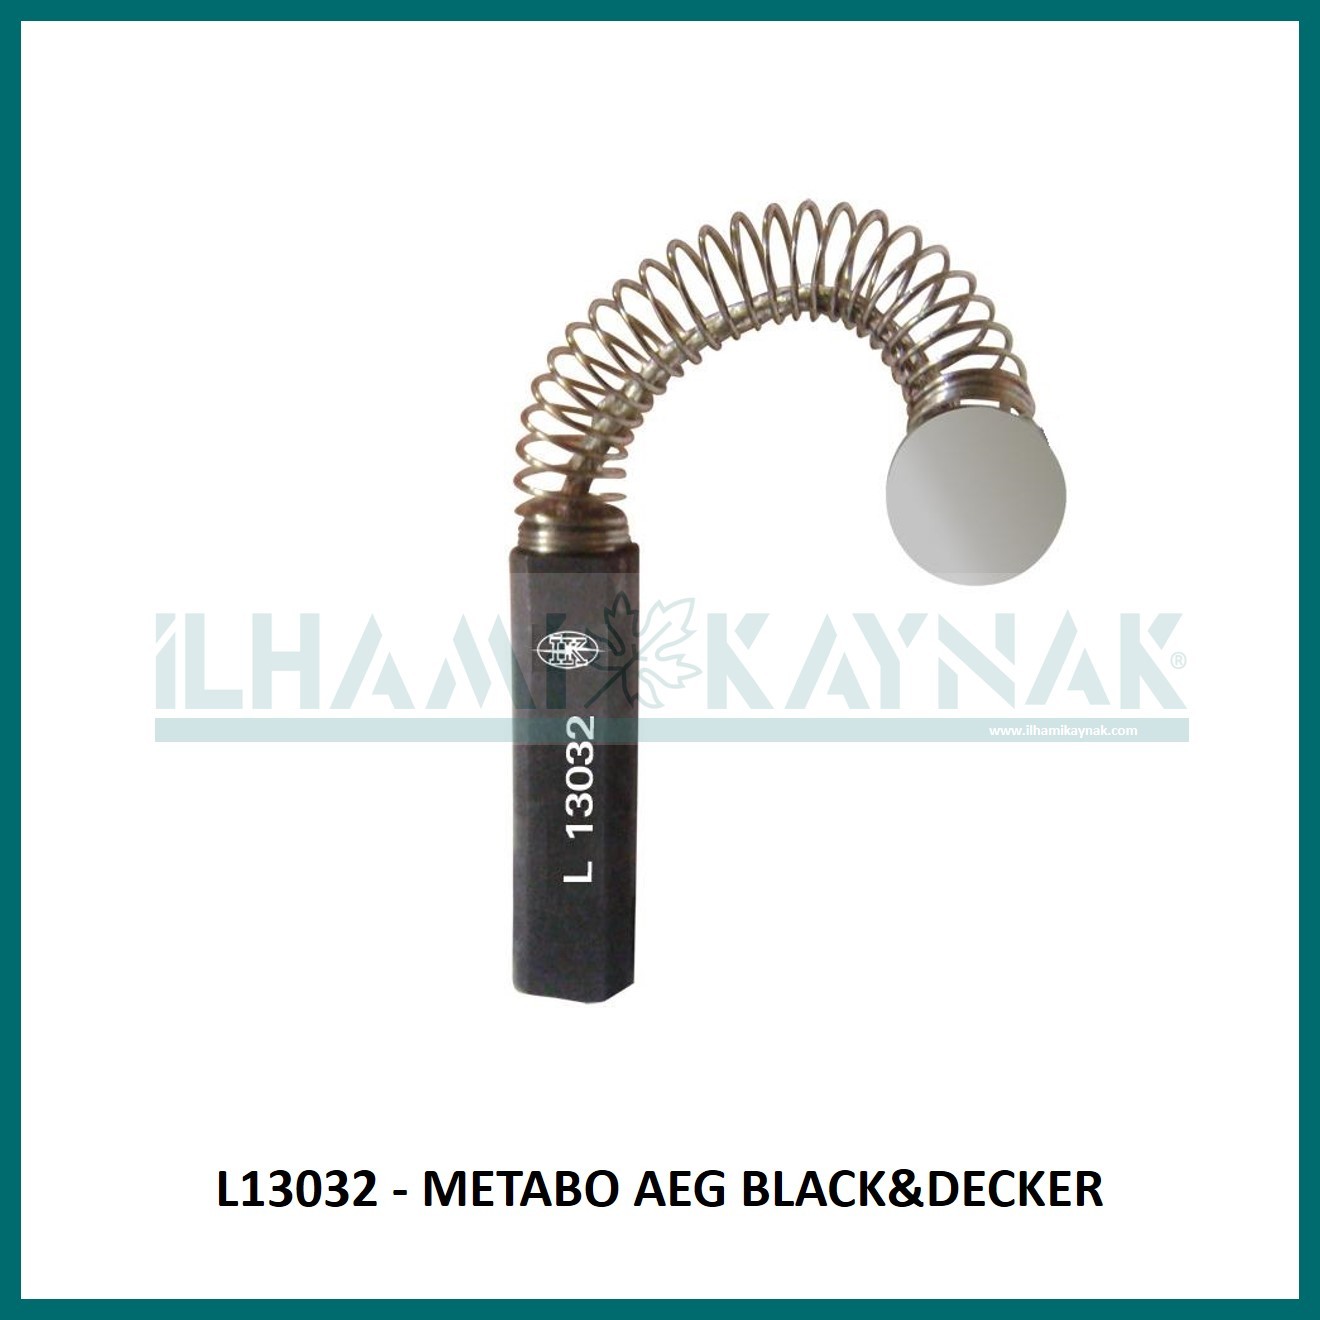 L13032 - METABO AEG BLACK&DECKER - 5*5*25 mm - 100 Adet